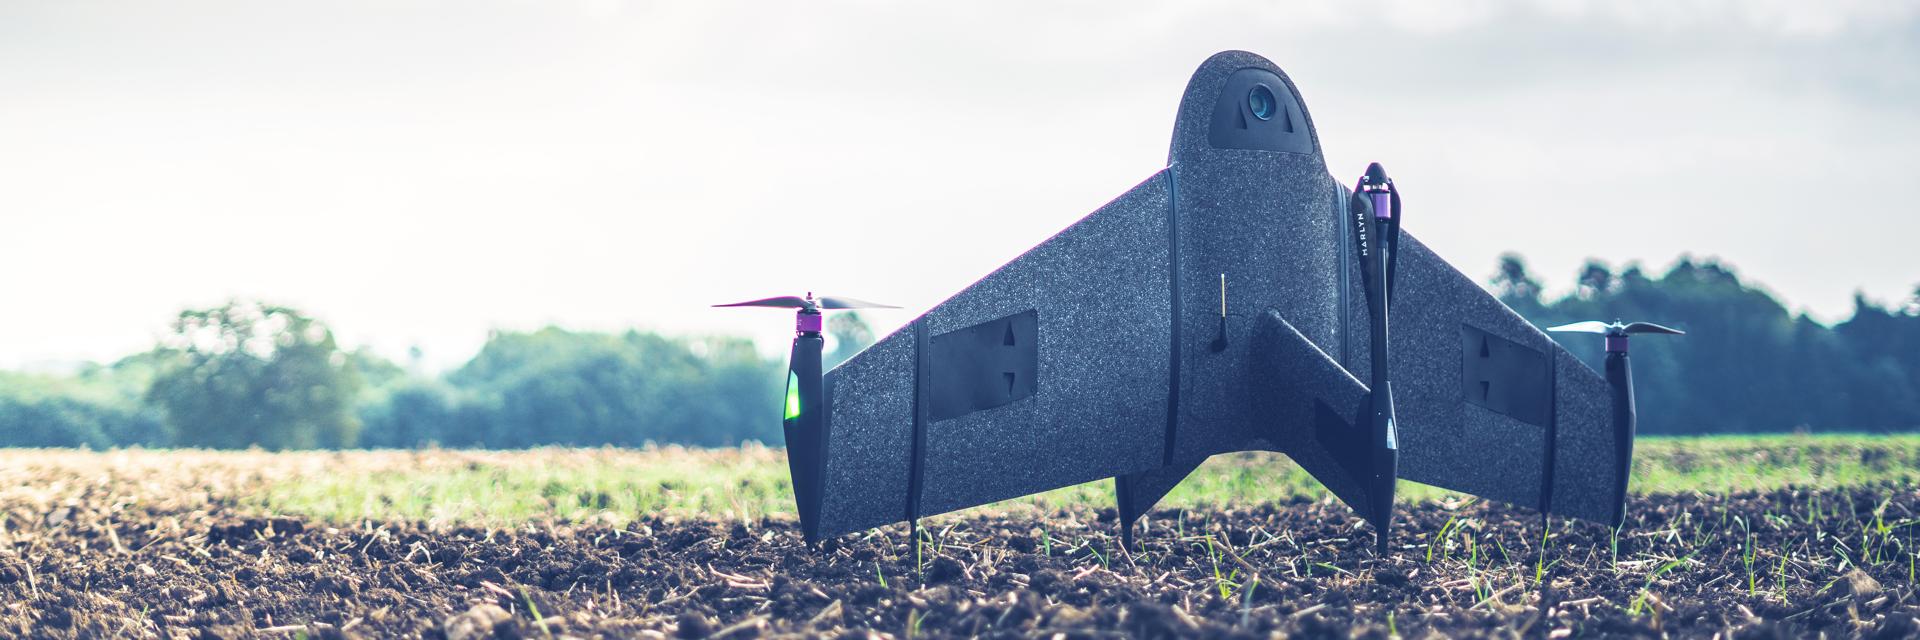 Un dron topográfico impreso en 3D en posición vertical sobre un campo embarrado.